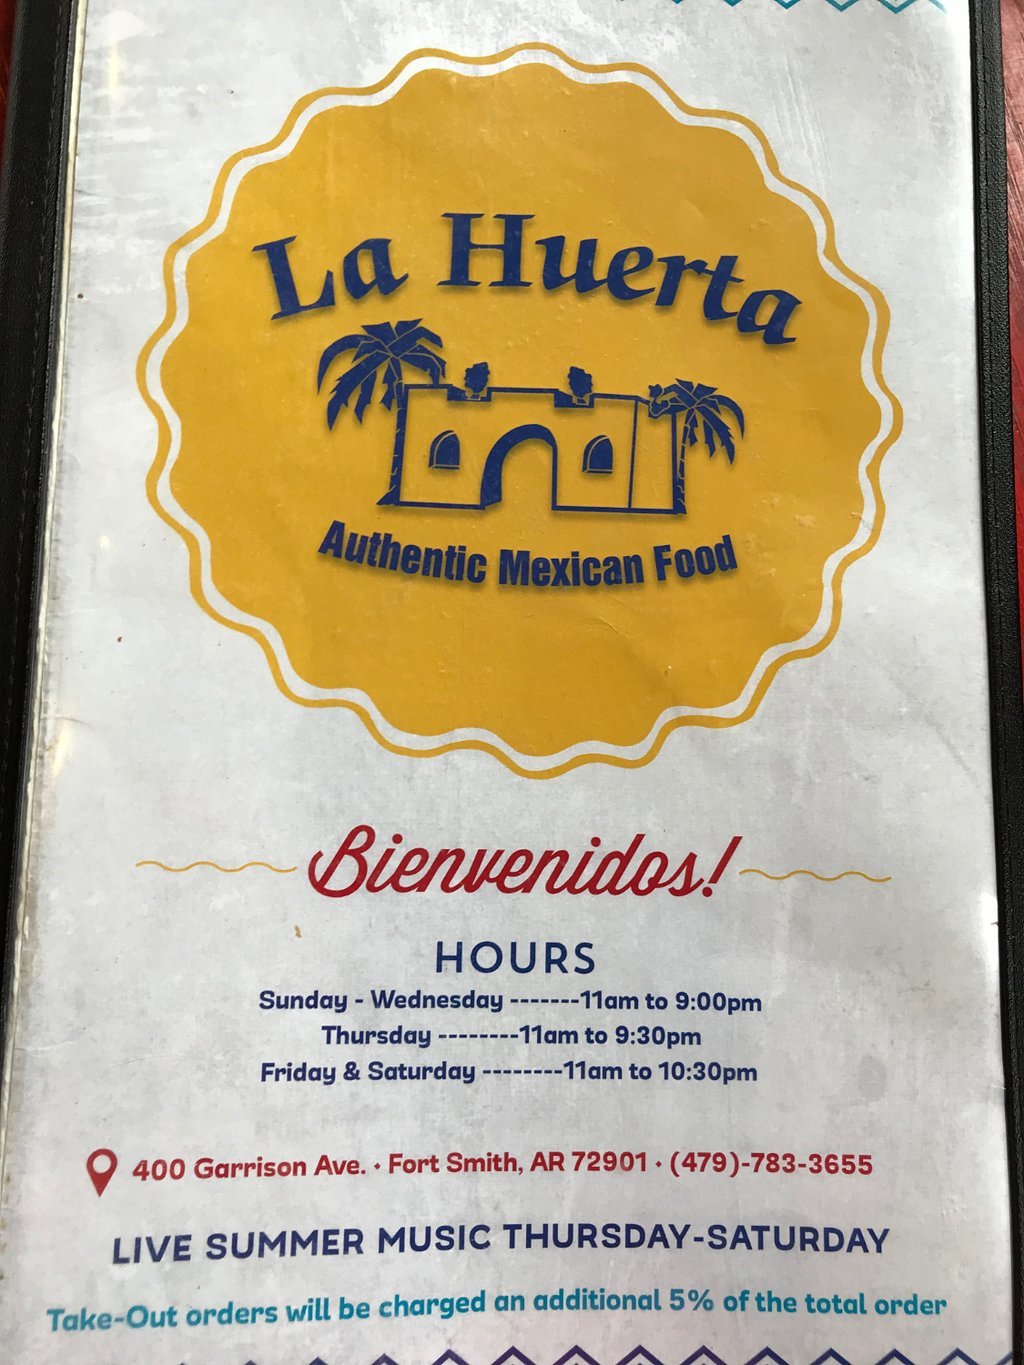 La Huerta Grill